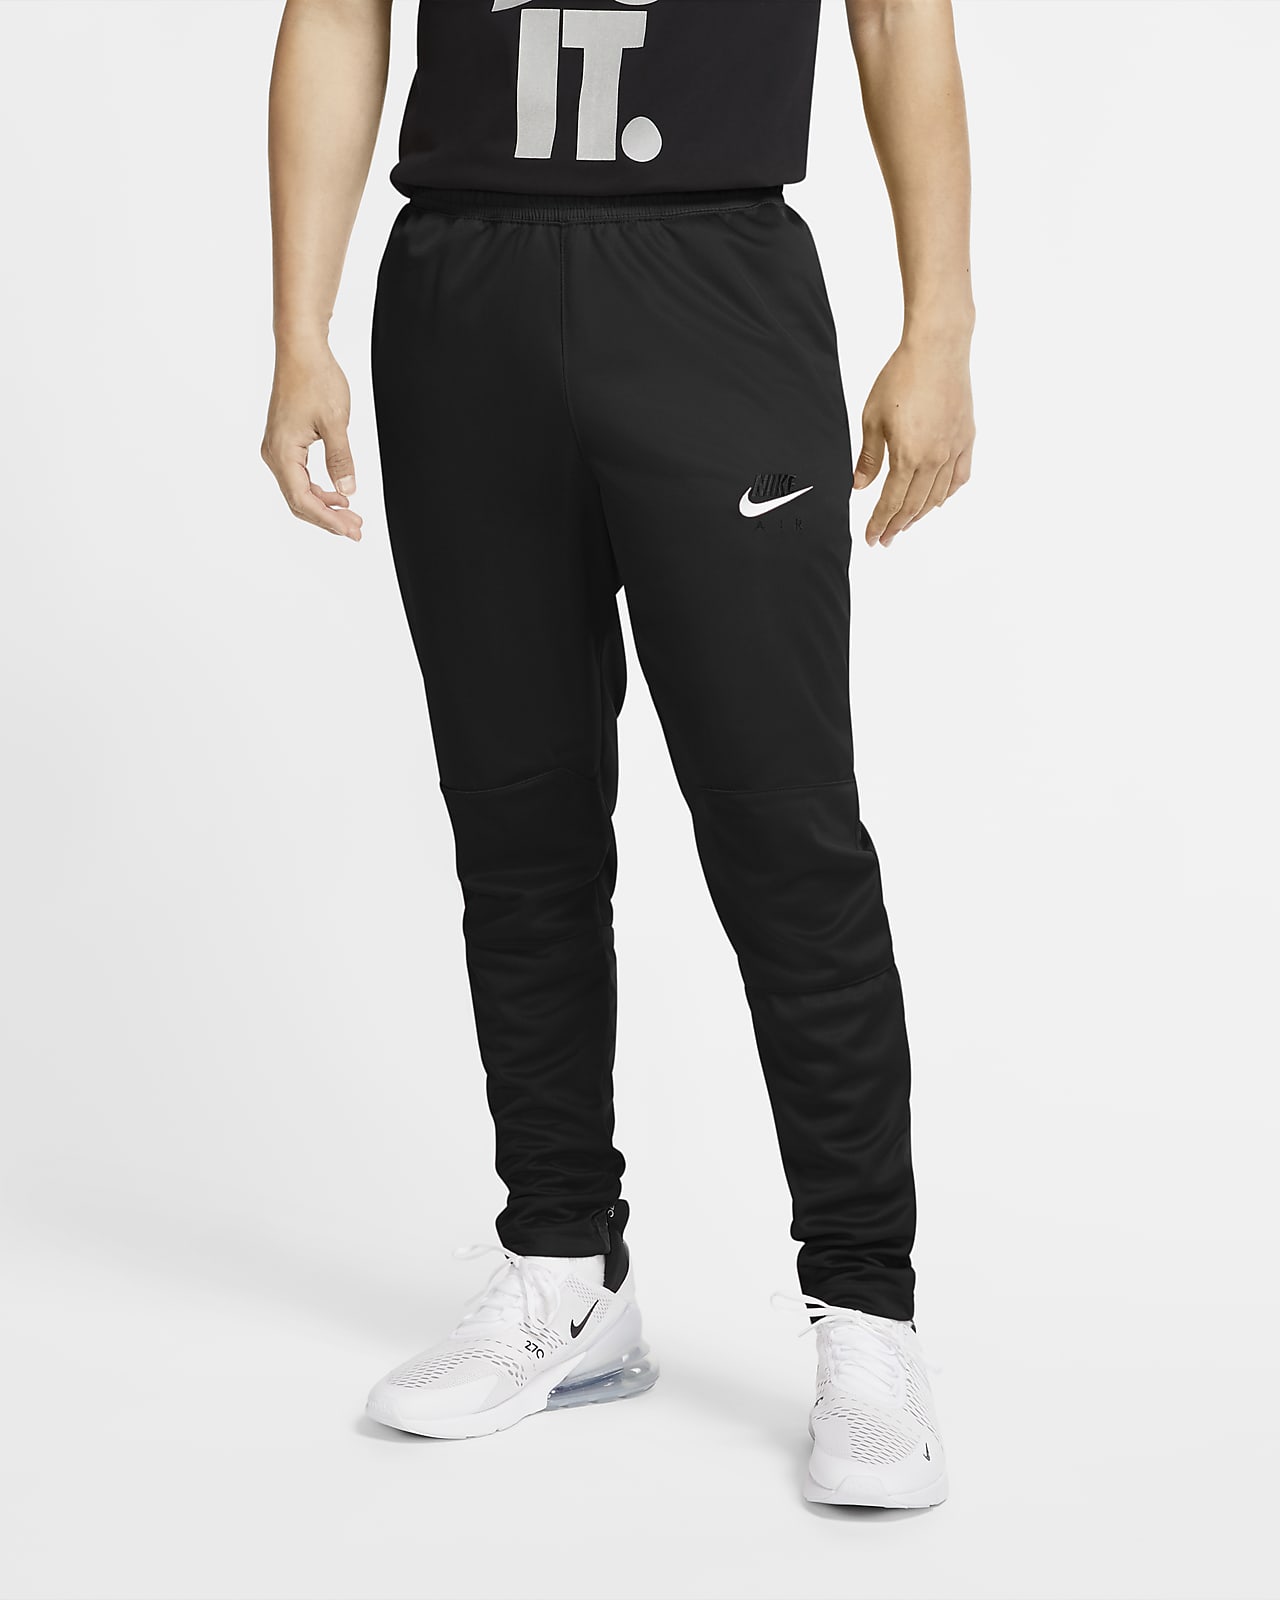 Pantalones Para Hombre Nike Air Nike Mx